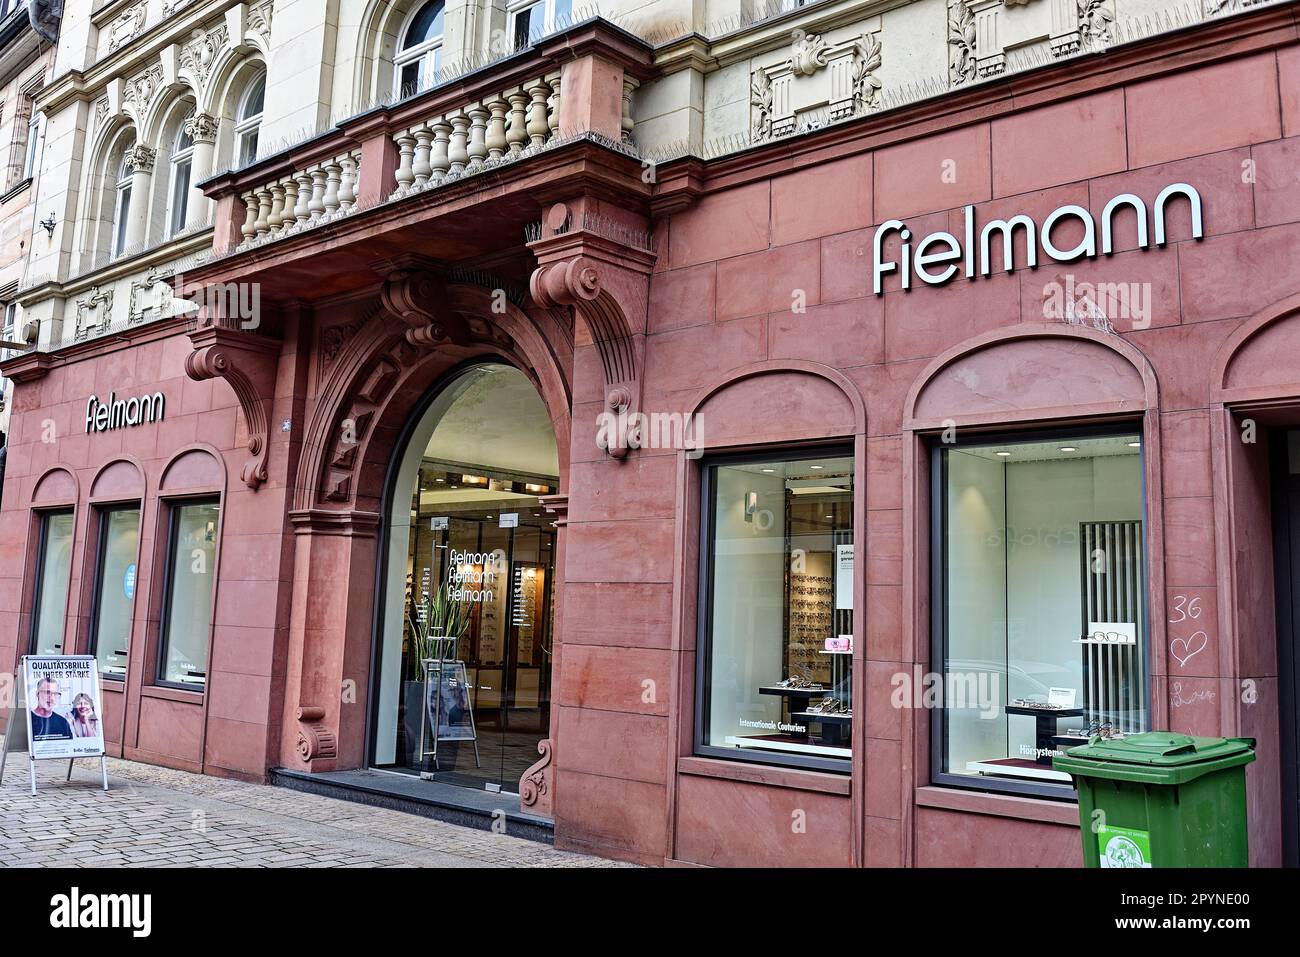 Economia, logo, nome della società, commercio al dettaglio con occhiali: Scritta della società Fielmann su una facciata Foto Stock